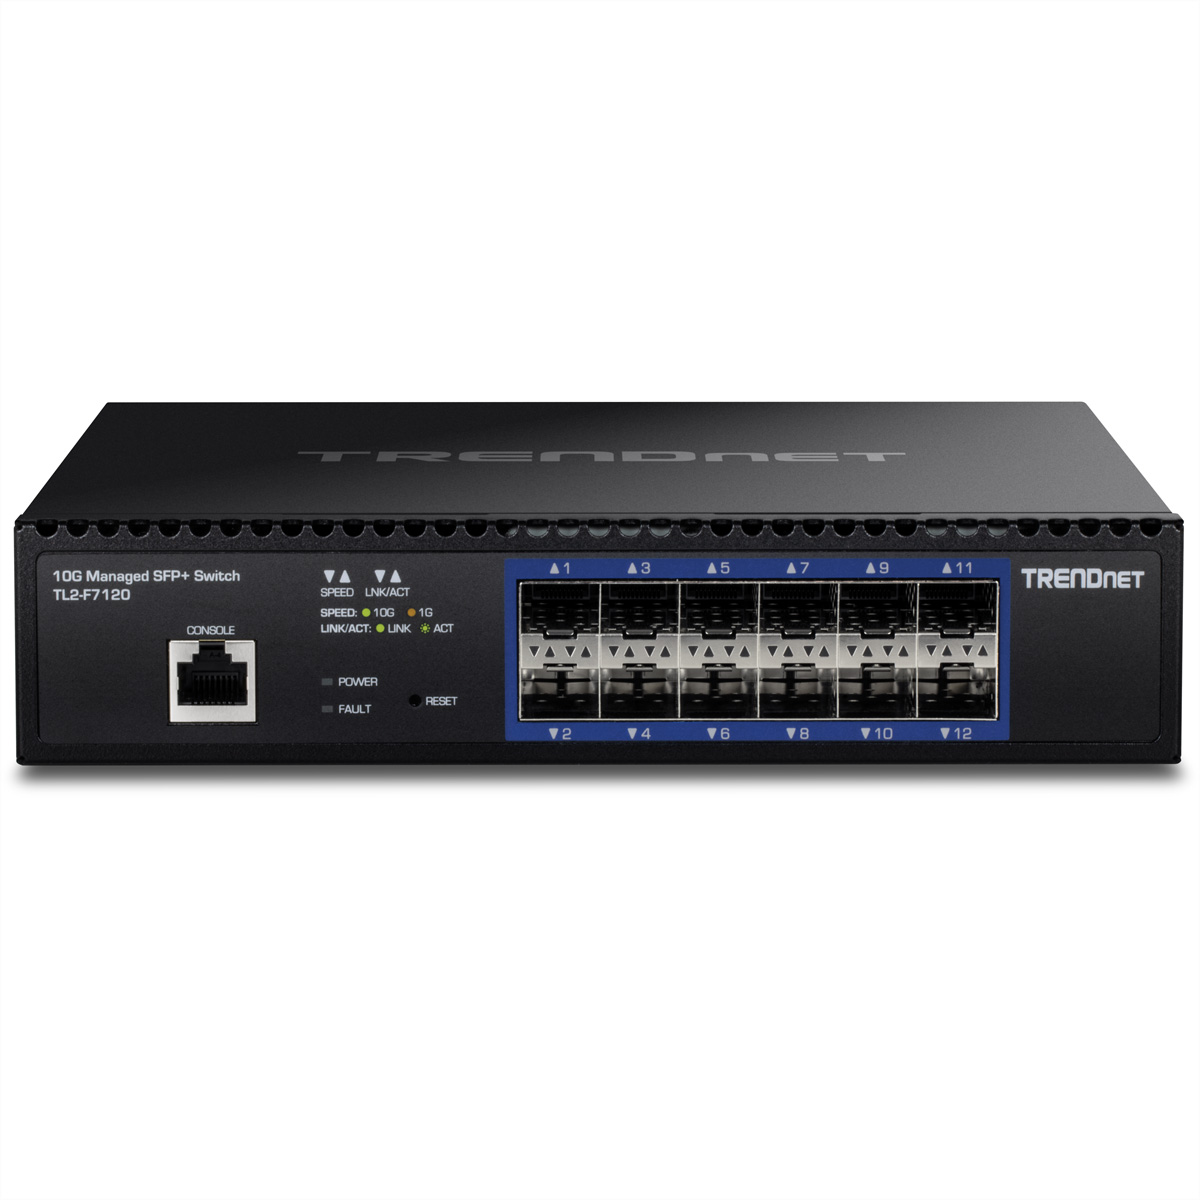 TRENDNET TL2-F7120 12 Port Switch Netzwerk-Switch